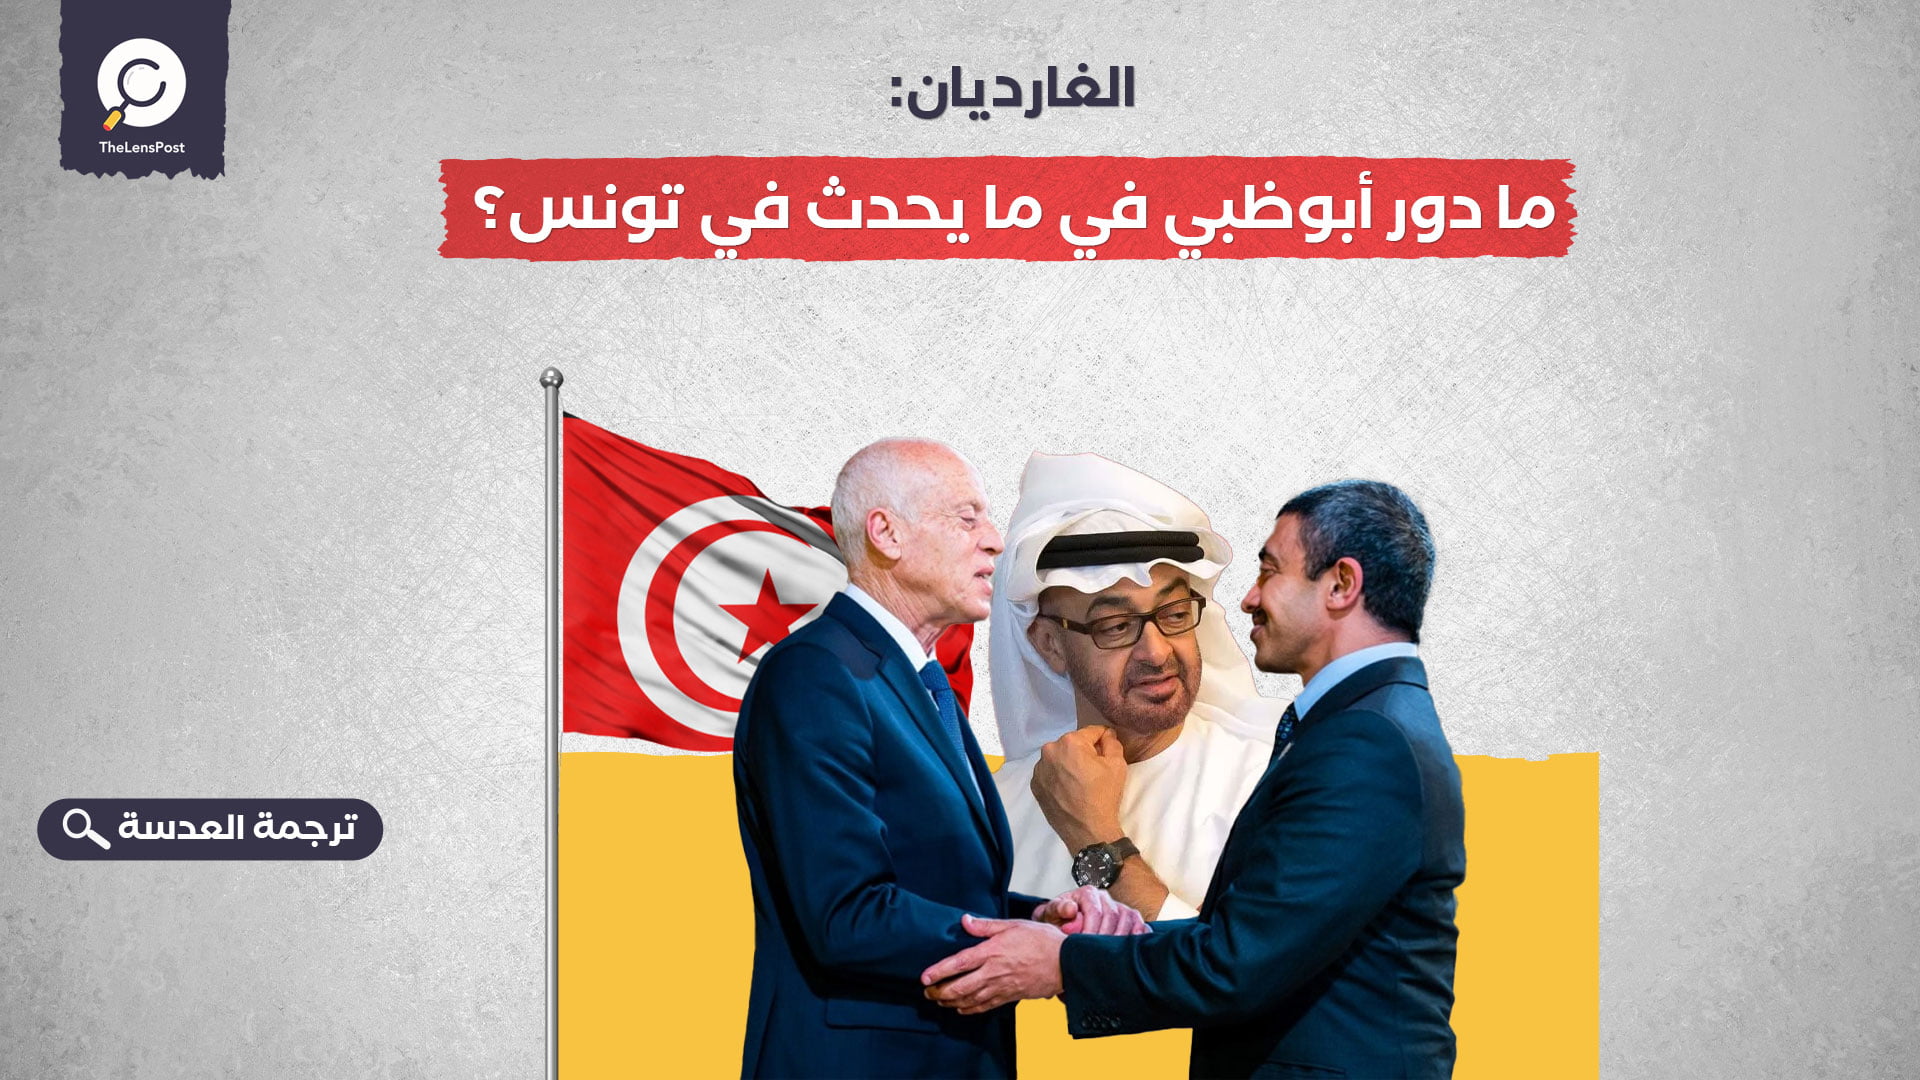 الغارديان: ما دور أبوظبي في ما يحدث في تونس؟